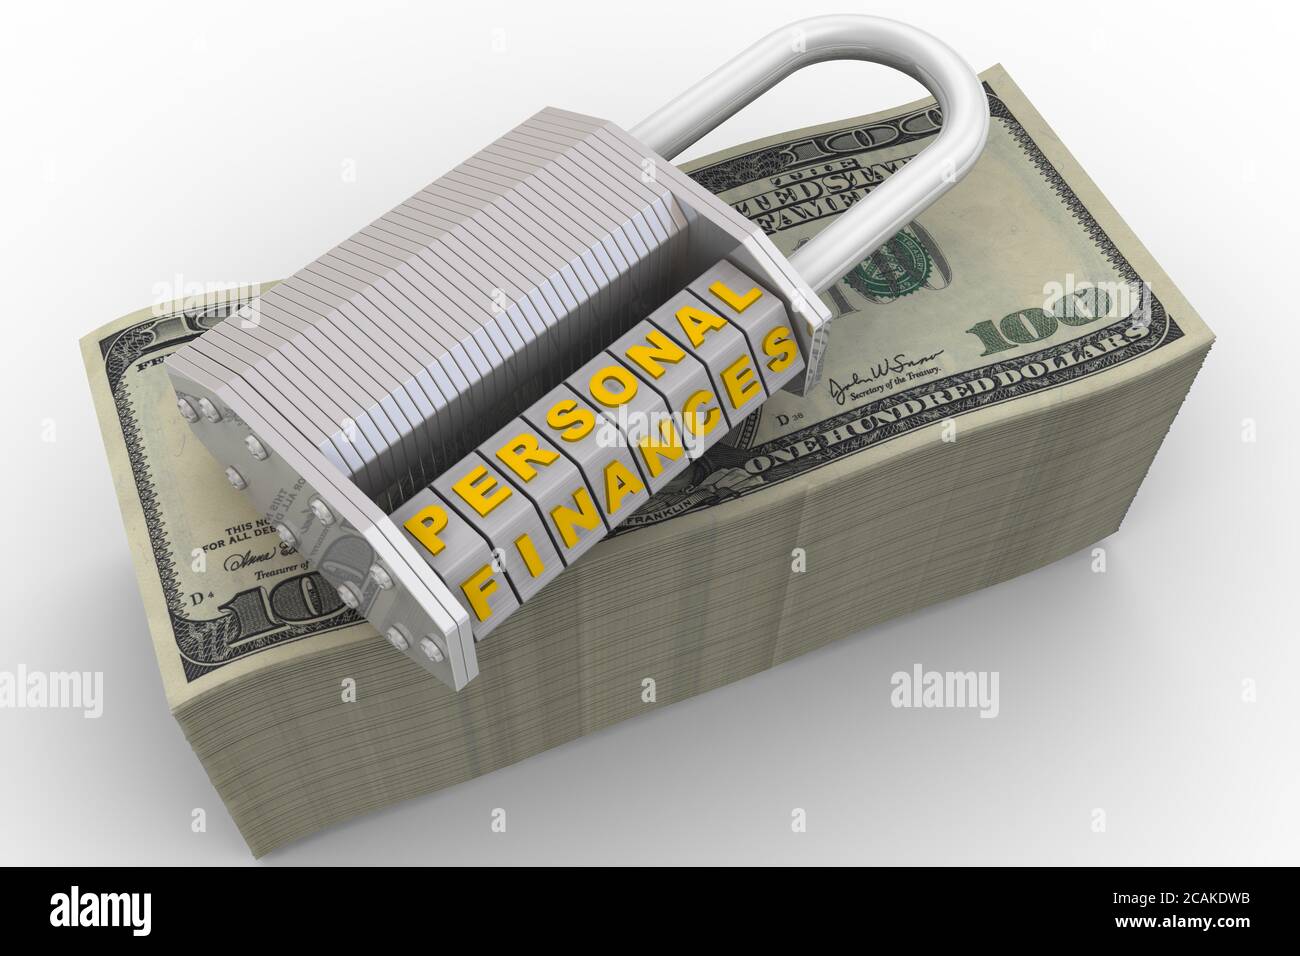 Les finances personnelles sont protégées. Cadenas à combinaison (mot-clé) avec lettres FINANCES PERSONNELLES sur un paquet de billets américains. Illustration 3D Banque D'Images